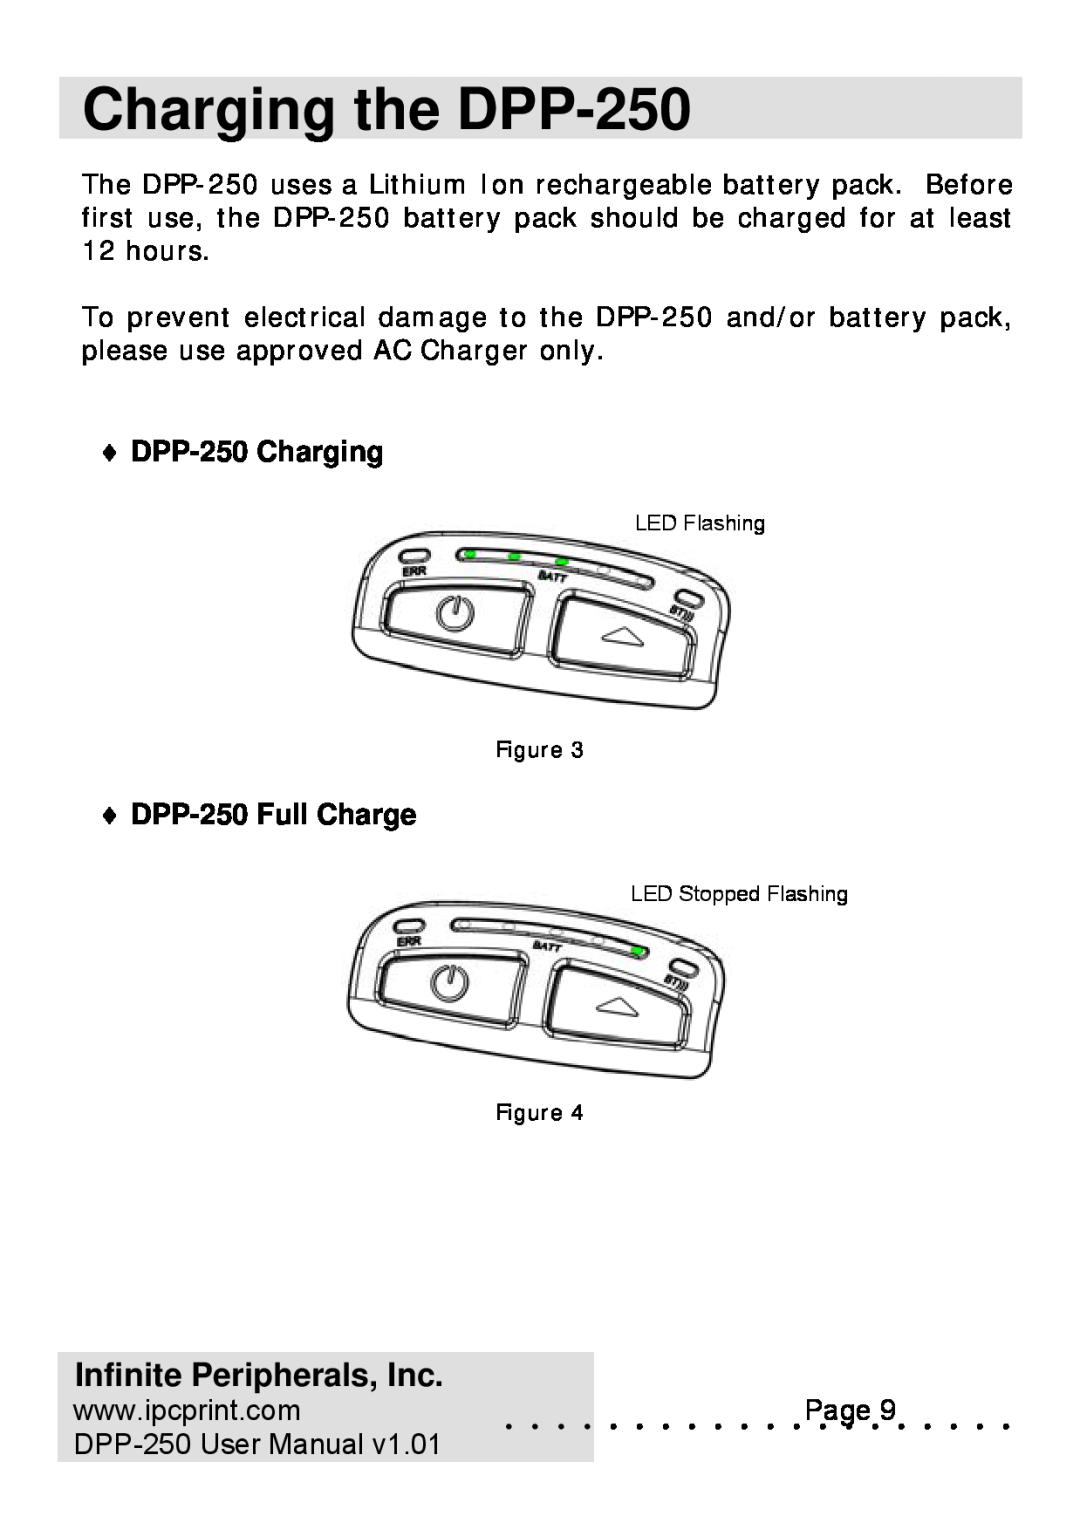 Infinite Peripherals user manual Charging the DPP-250, DPP-250 Charging, DPP-250 Full Charge, Infinite Peripherals, Inc 